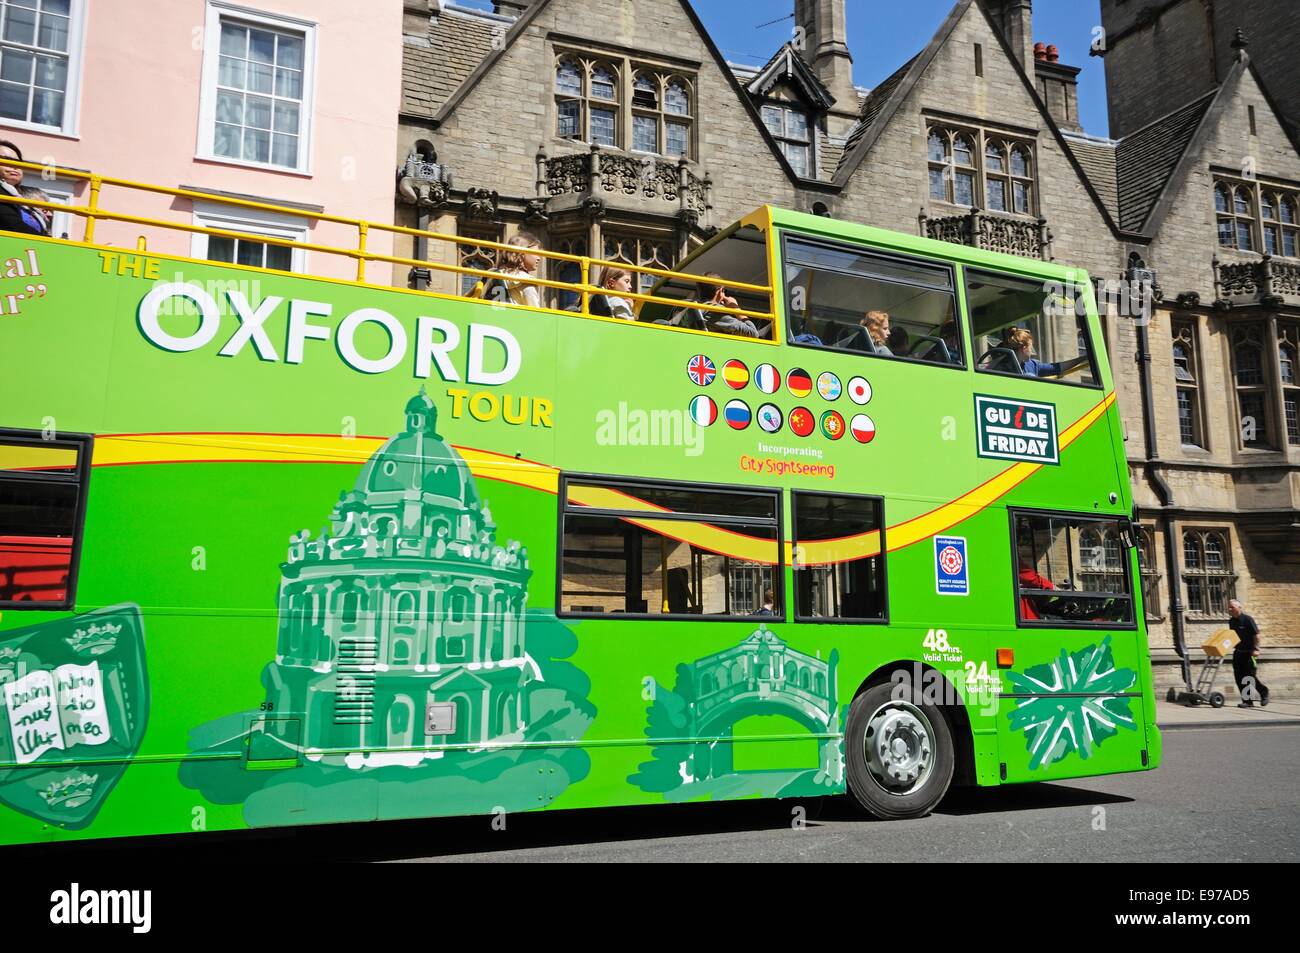 Ouvert vert surmontée Oxford tour bus le long de High Street, Oxford, Oxfordshire, Angleterre, Royaume-Uni, Europe de l'Ouest. Banque D'Images